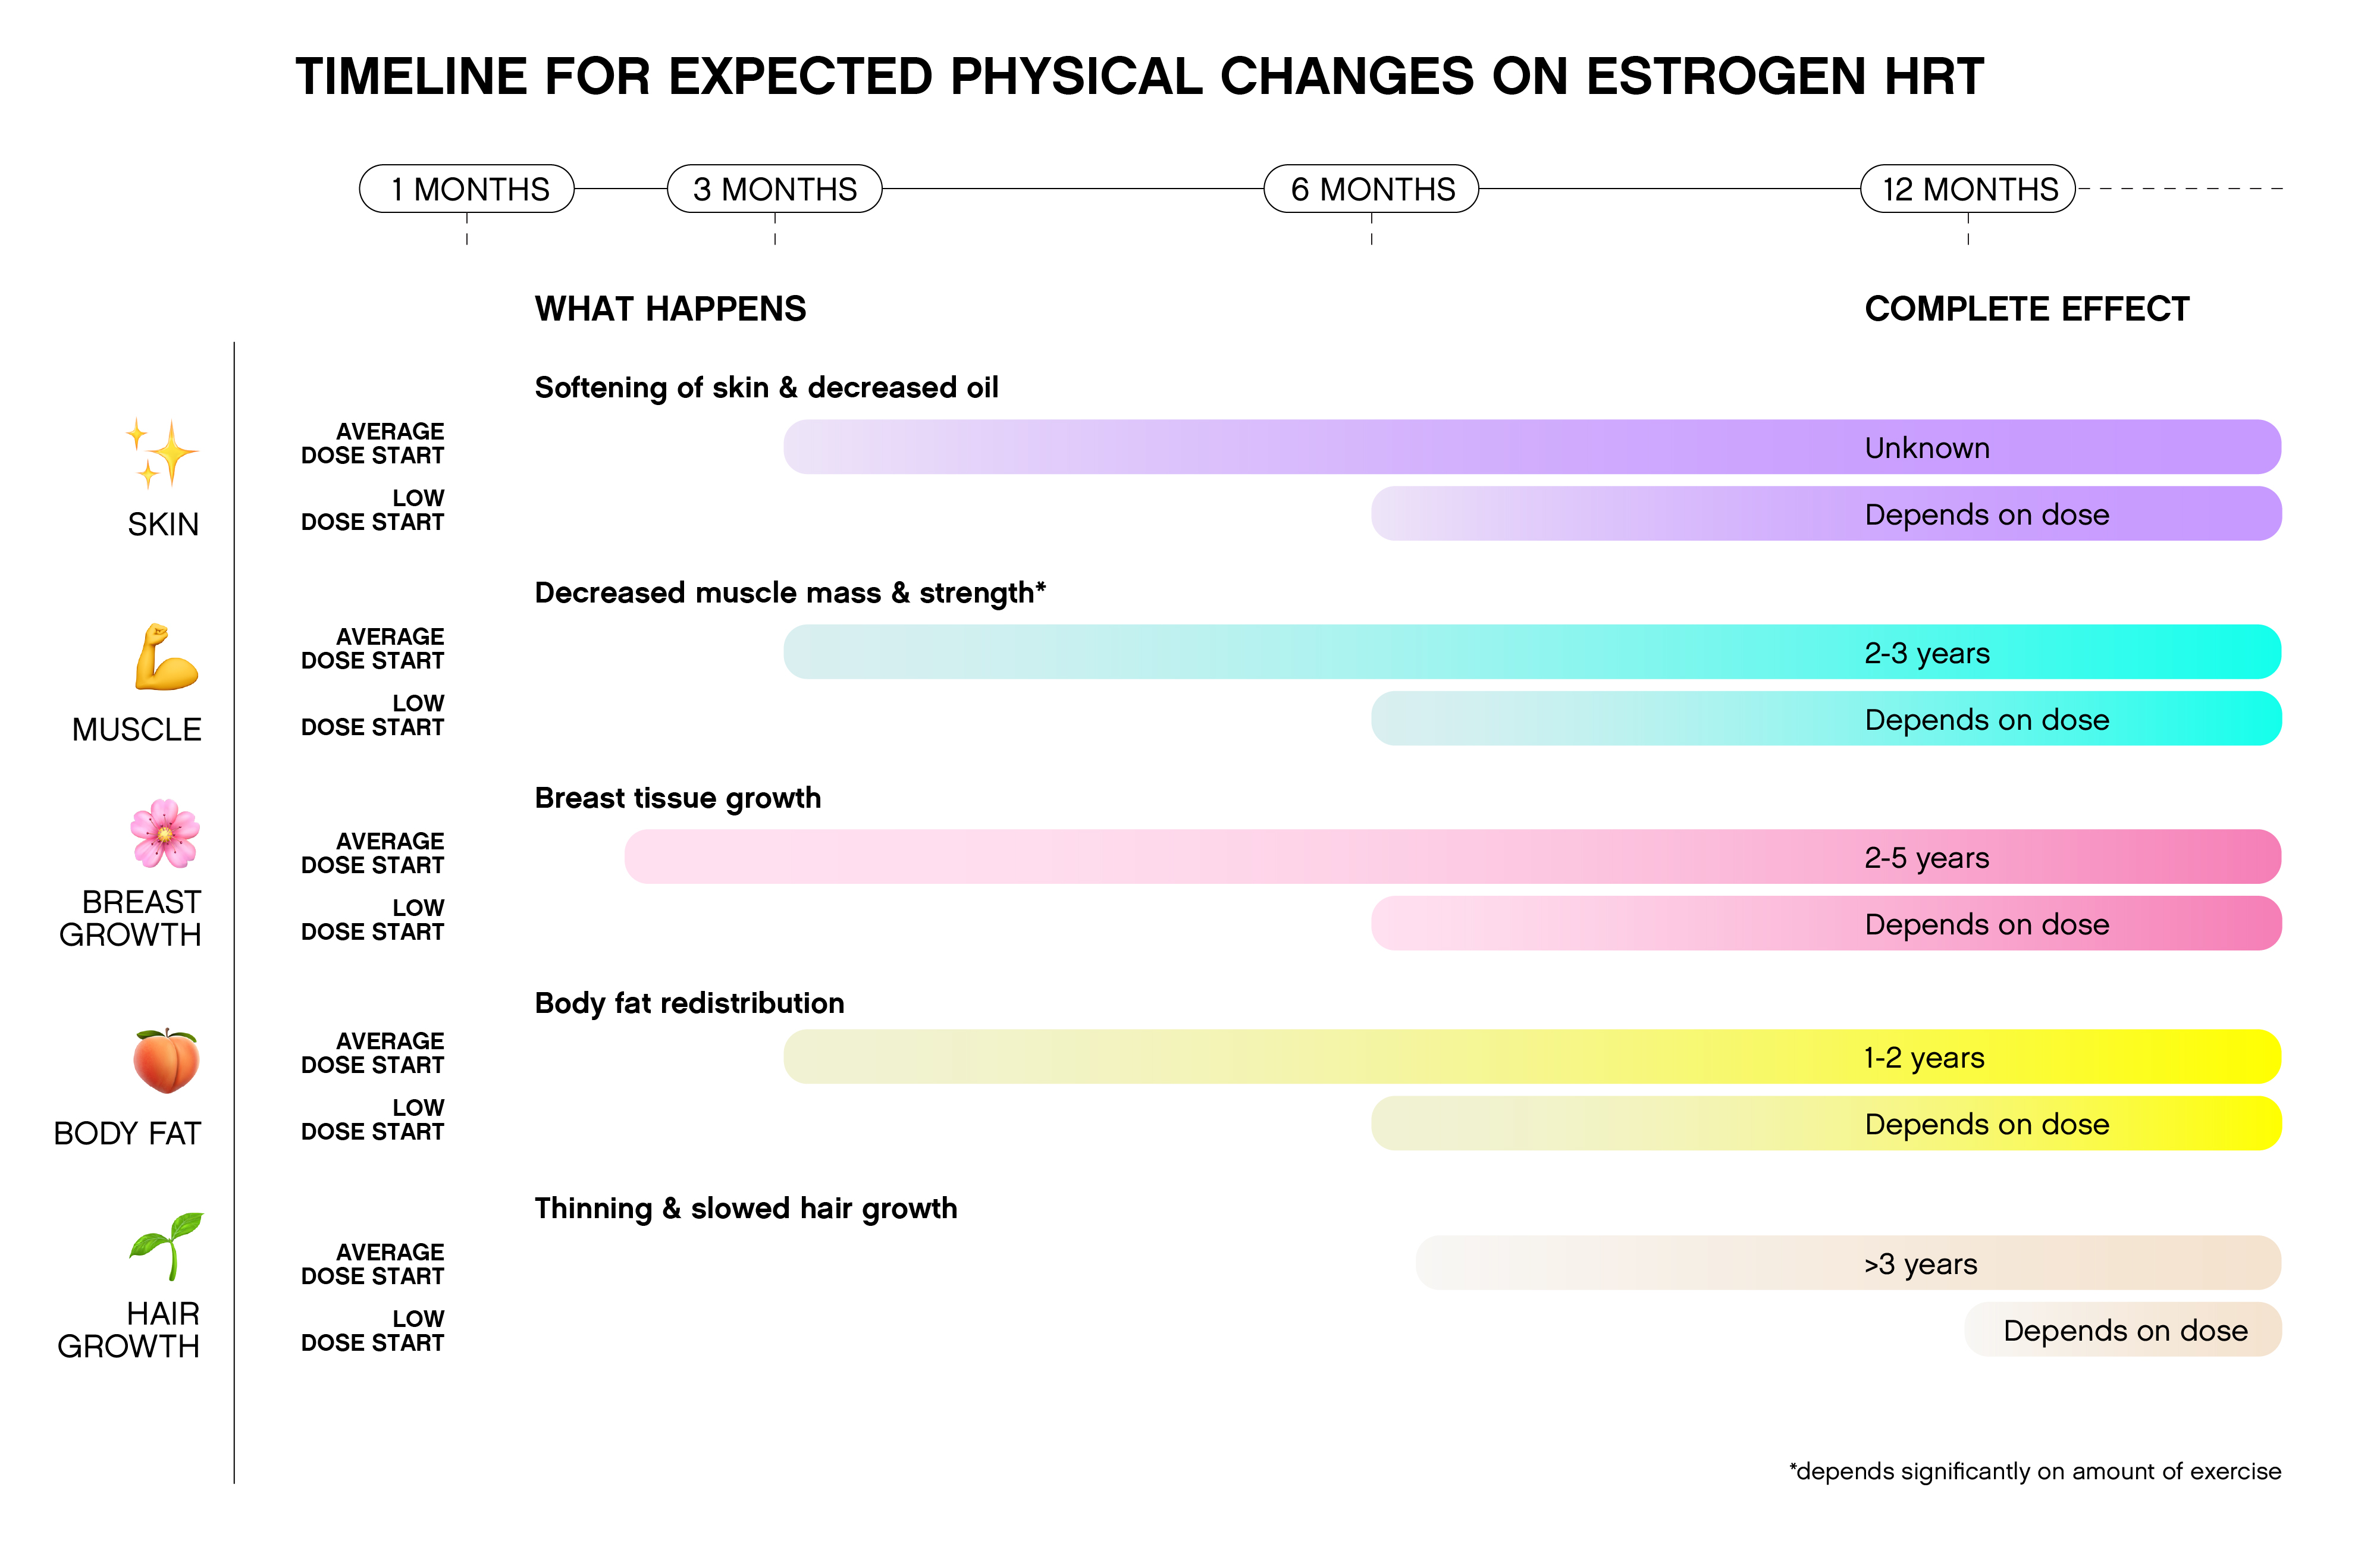 Timeline of changes on estrogen HRT